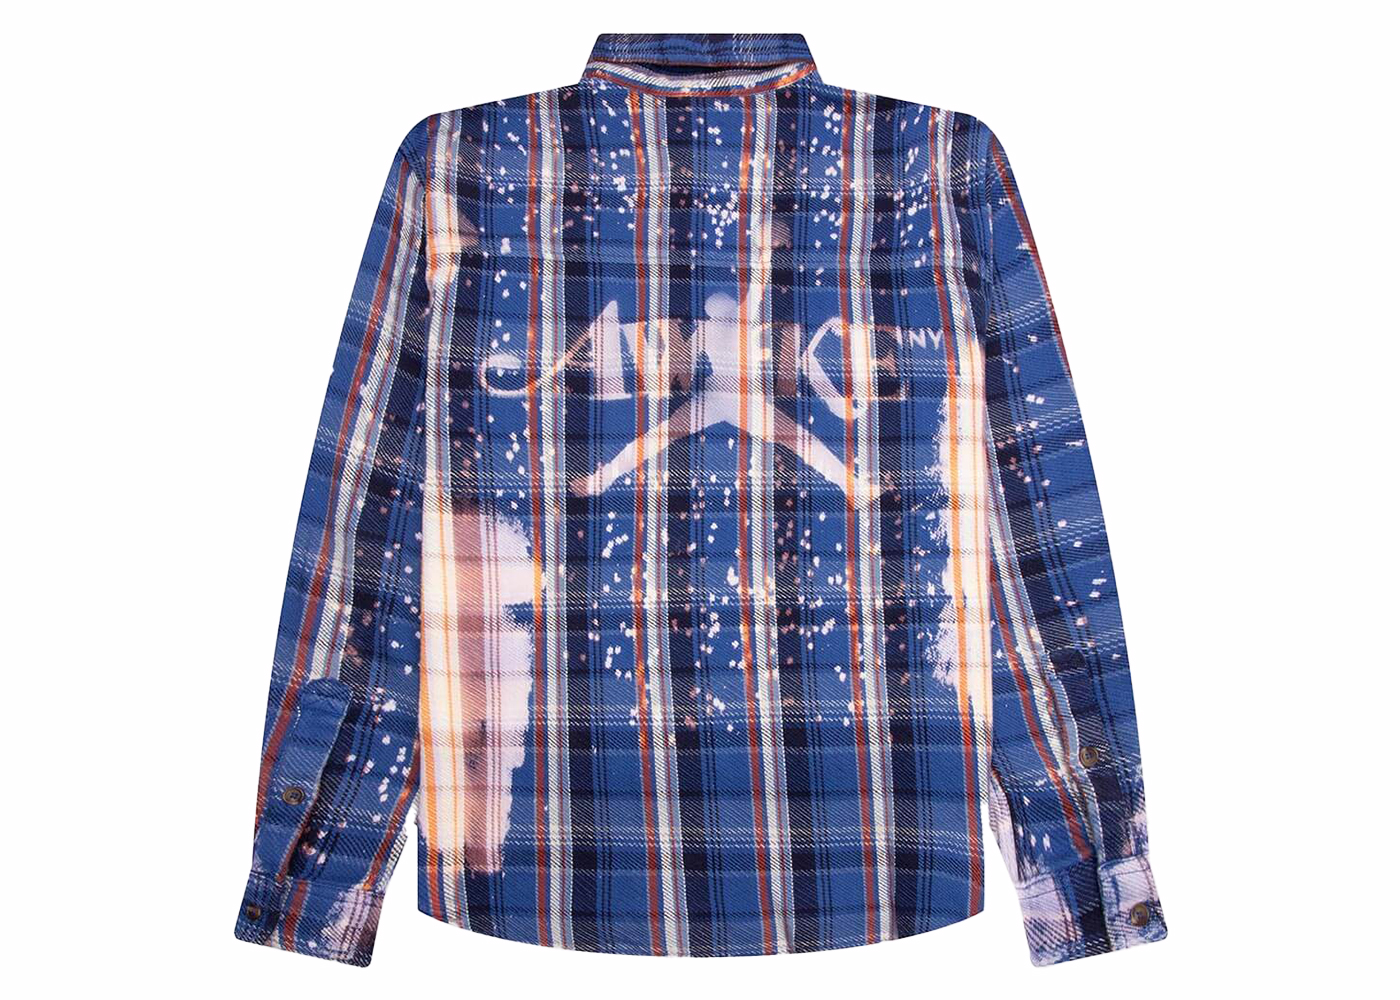 Nike JORDAN x Awake NY Flannel Shirtネルシャツ